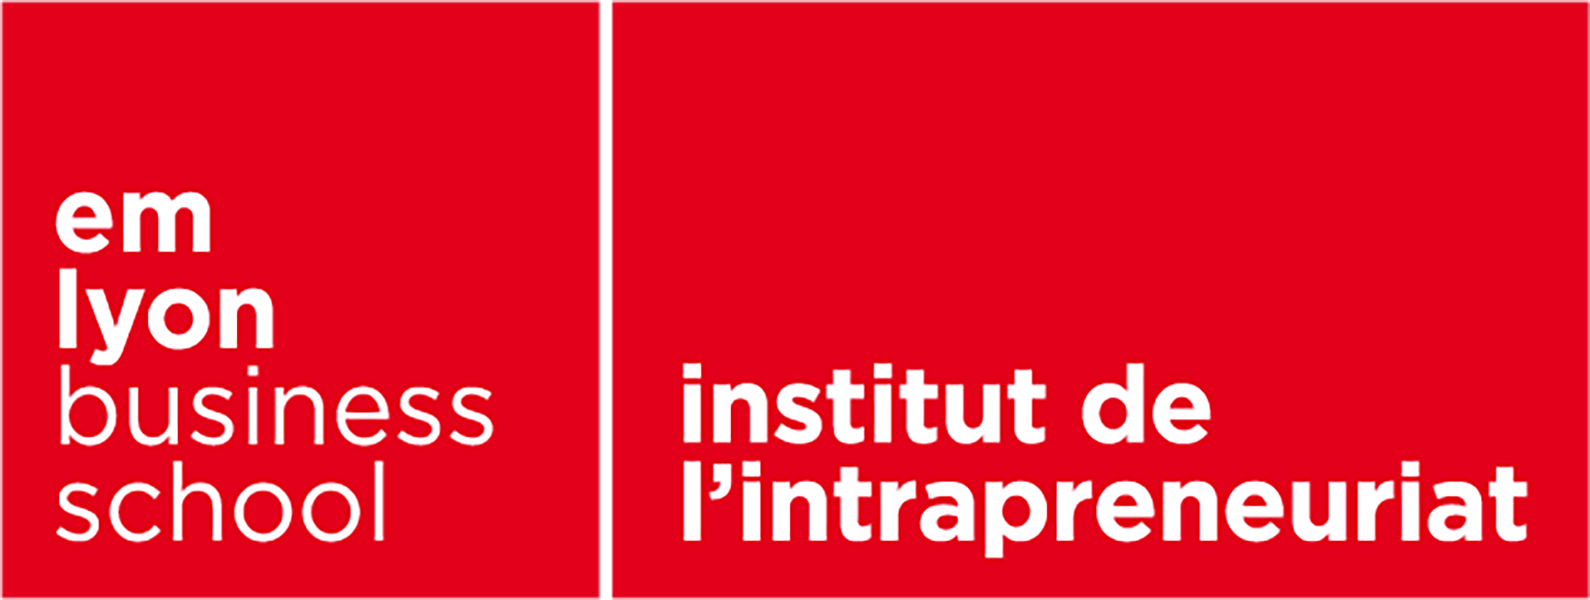 L'Institut de L'intrapreneuriat